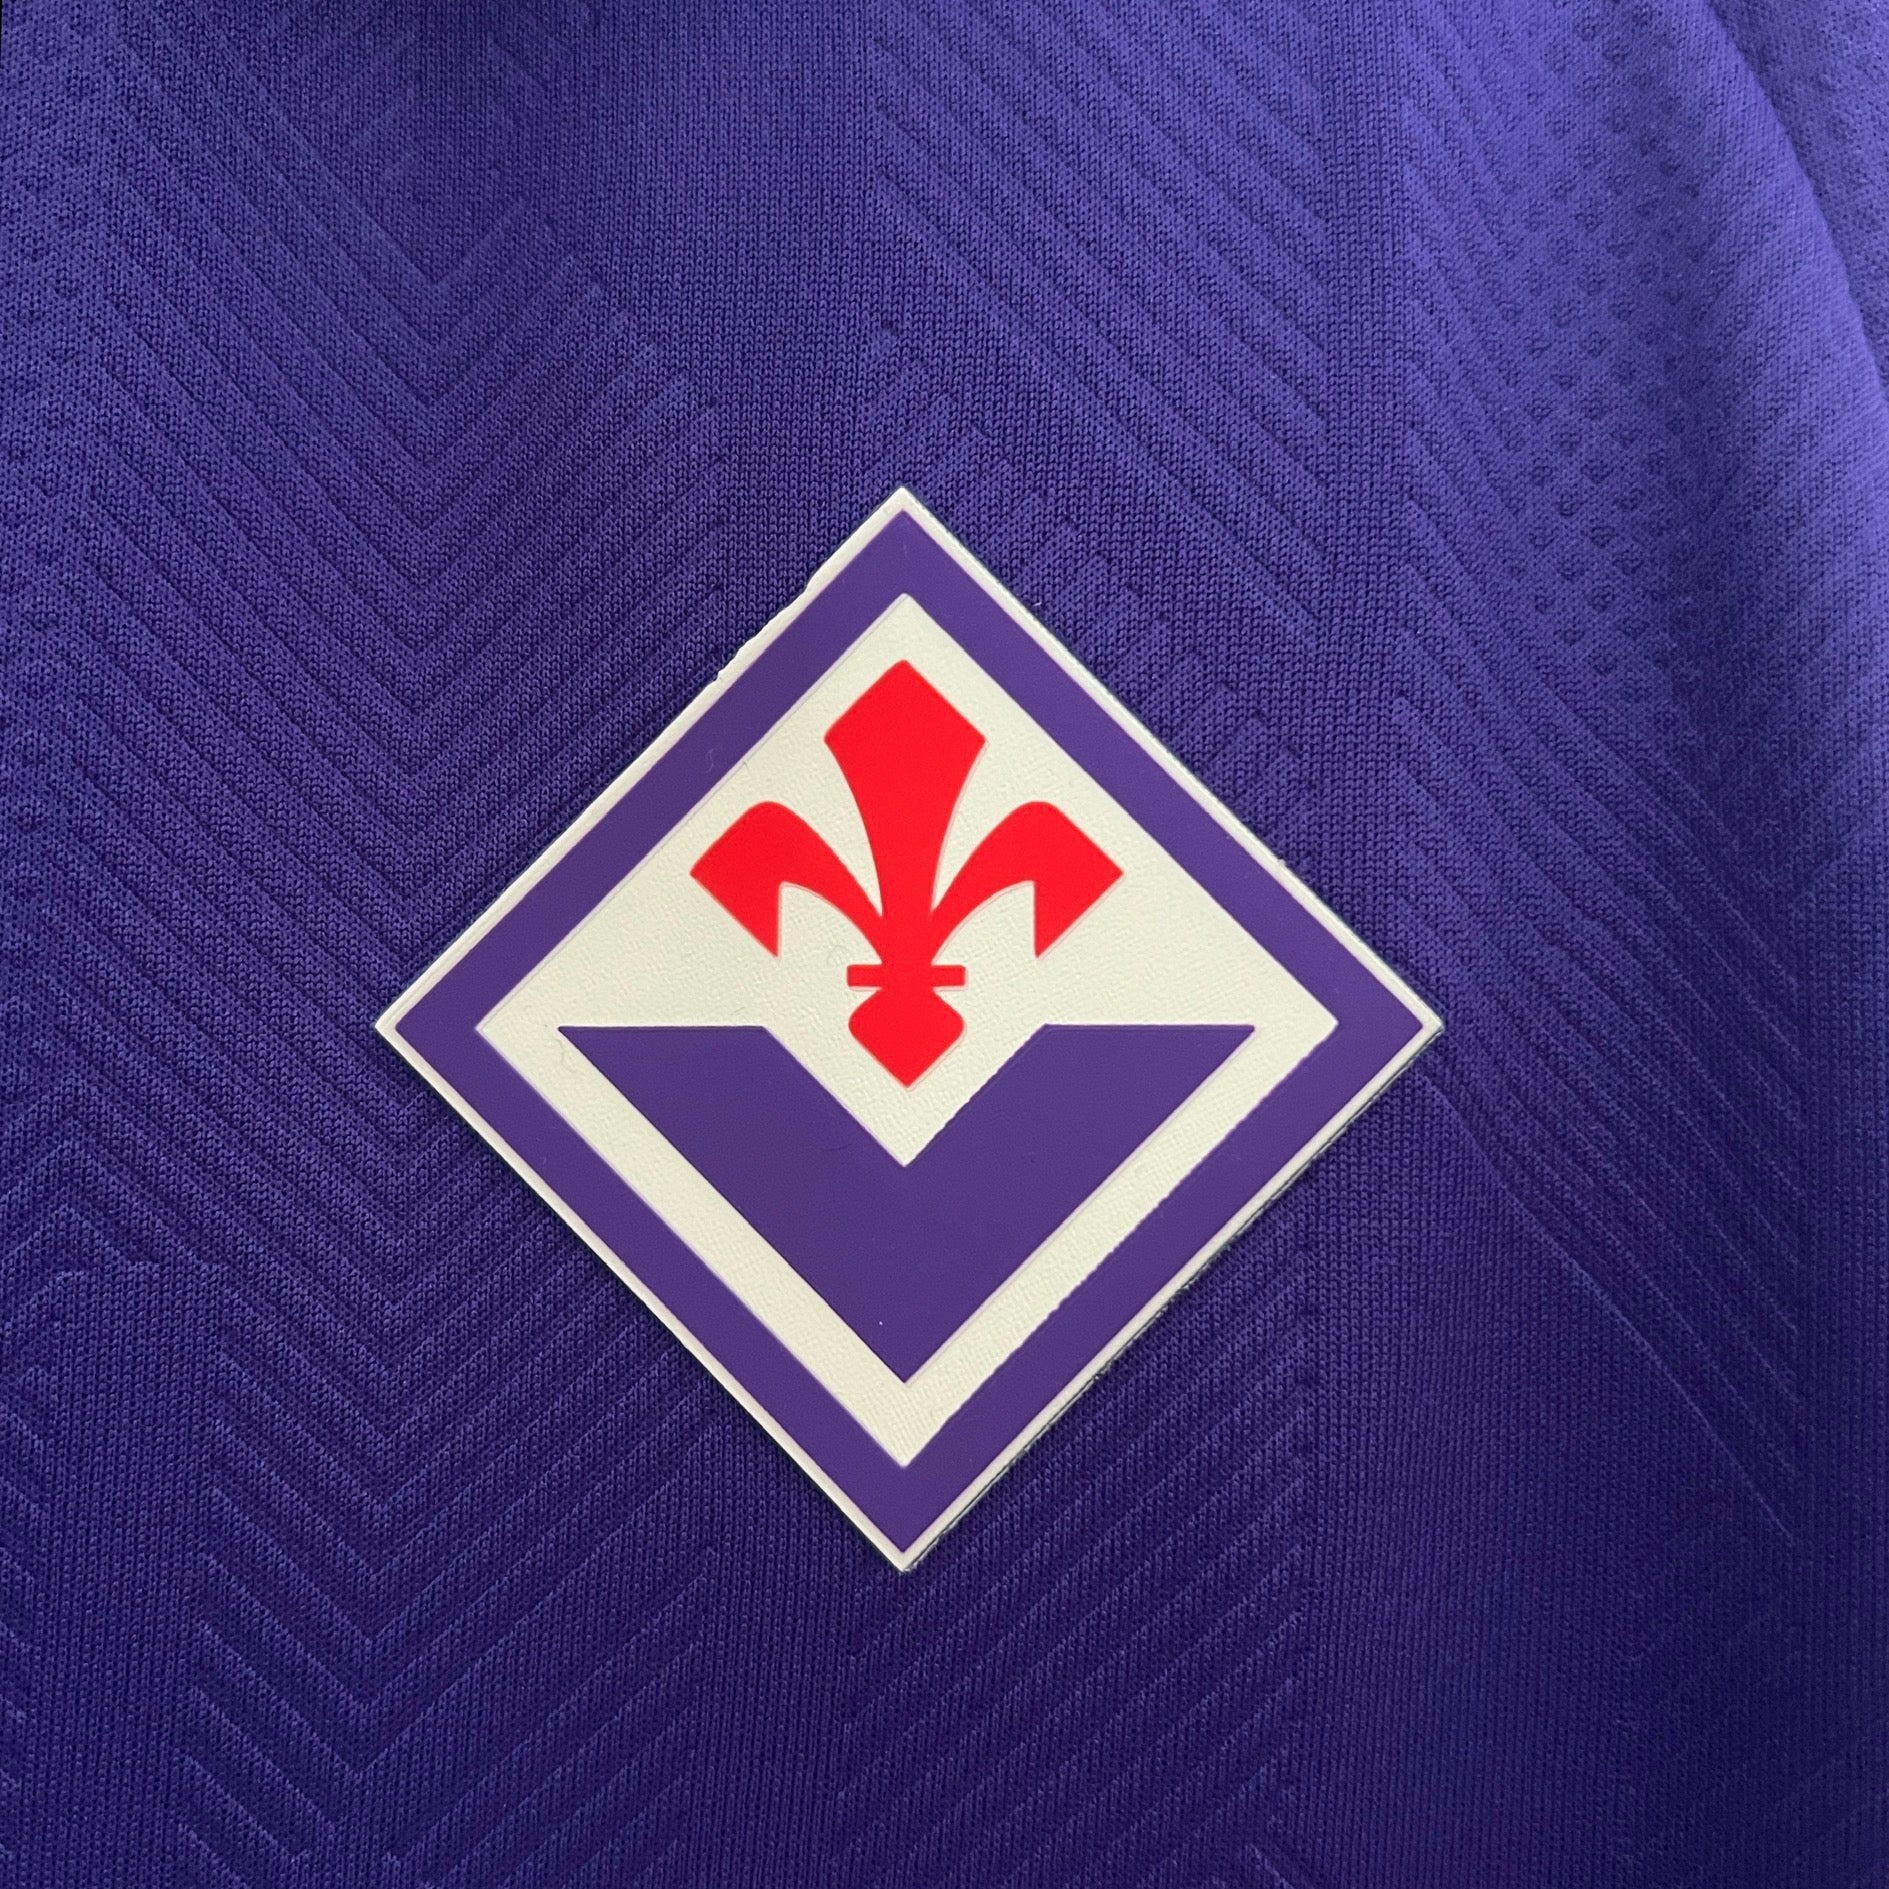 Maglia Fiorentina - 24/25